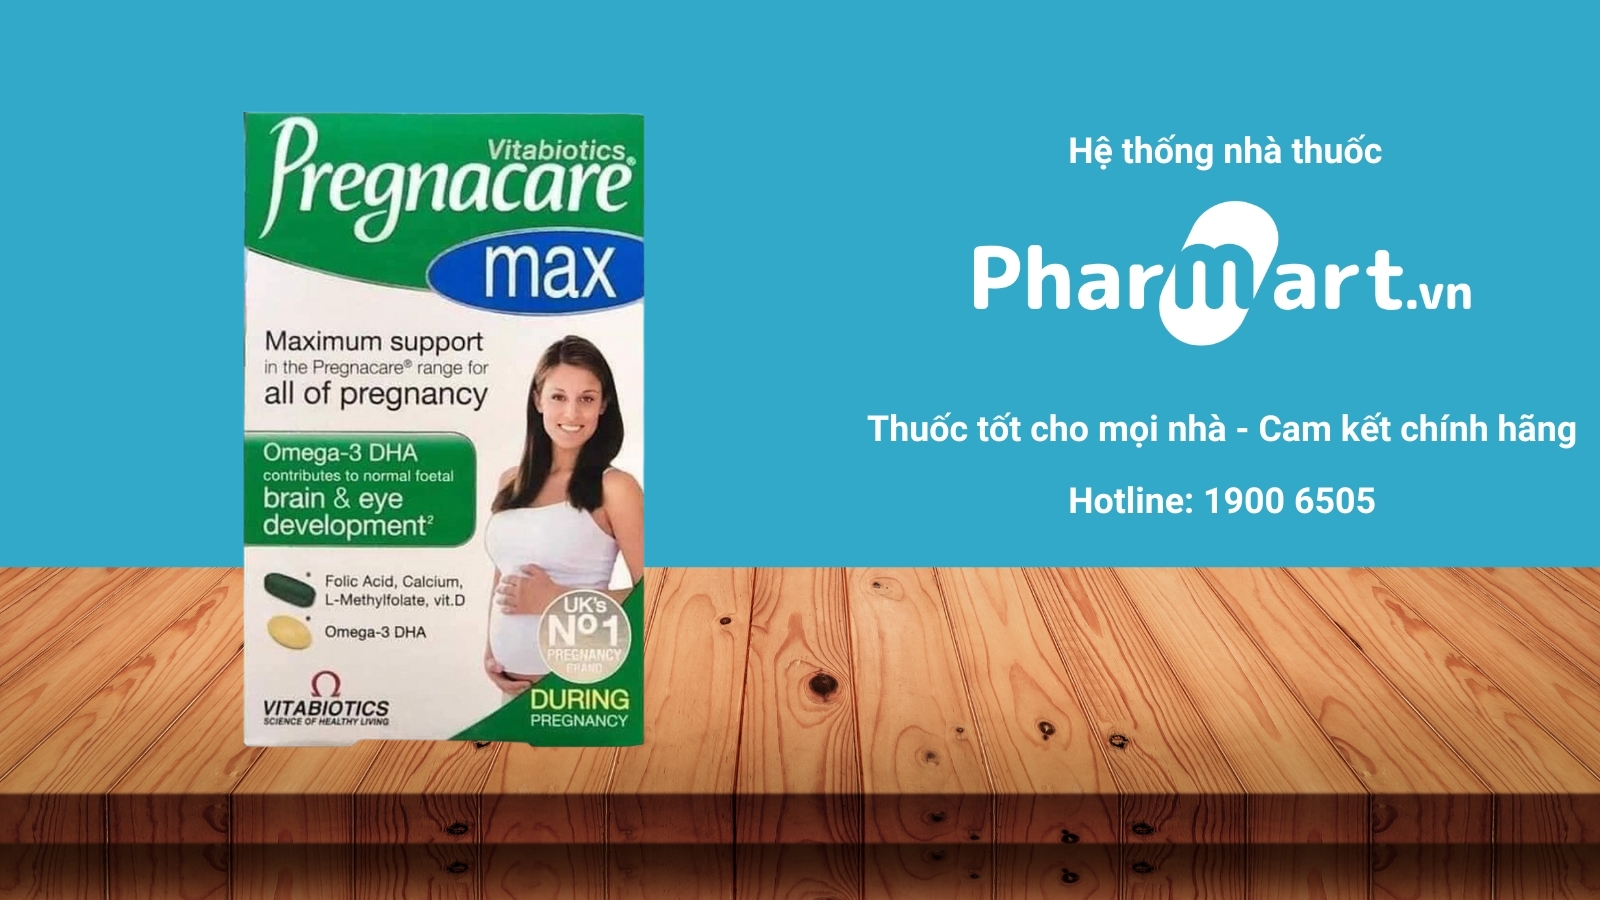 Mua ngay Pregnacare Max chính hãng tại Pharmart.vn